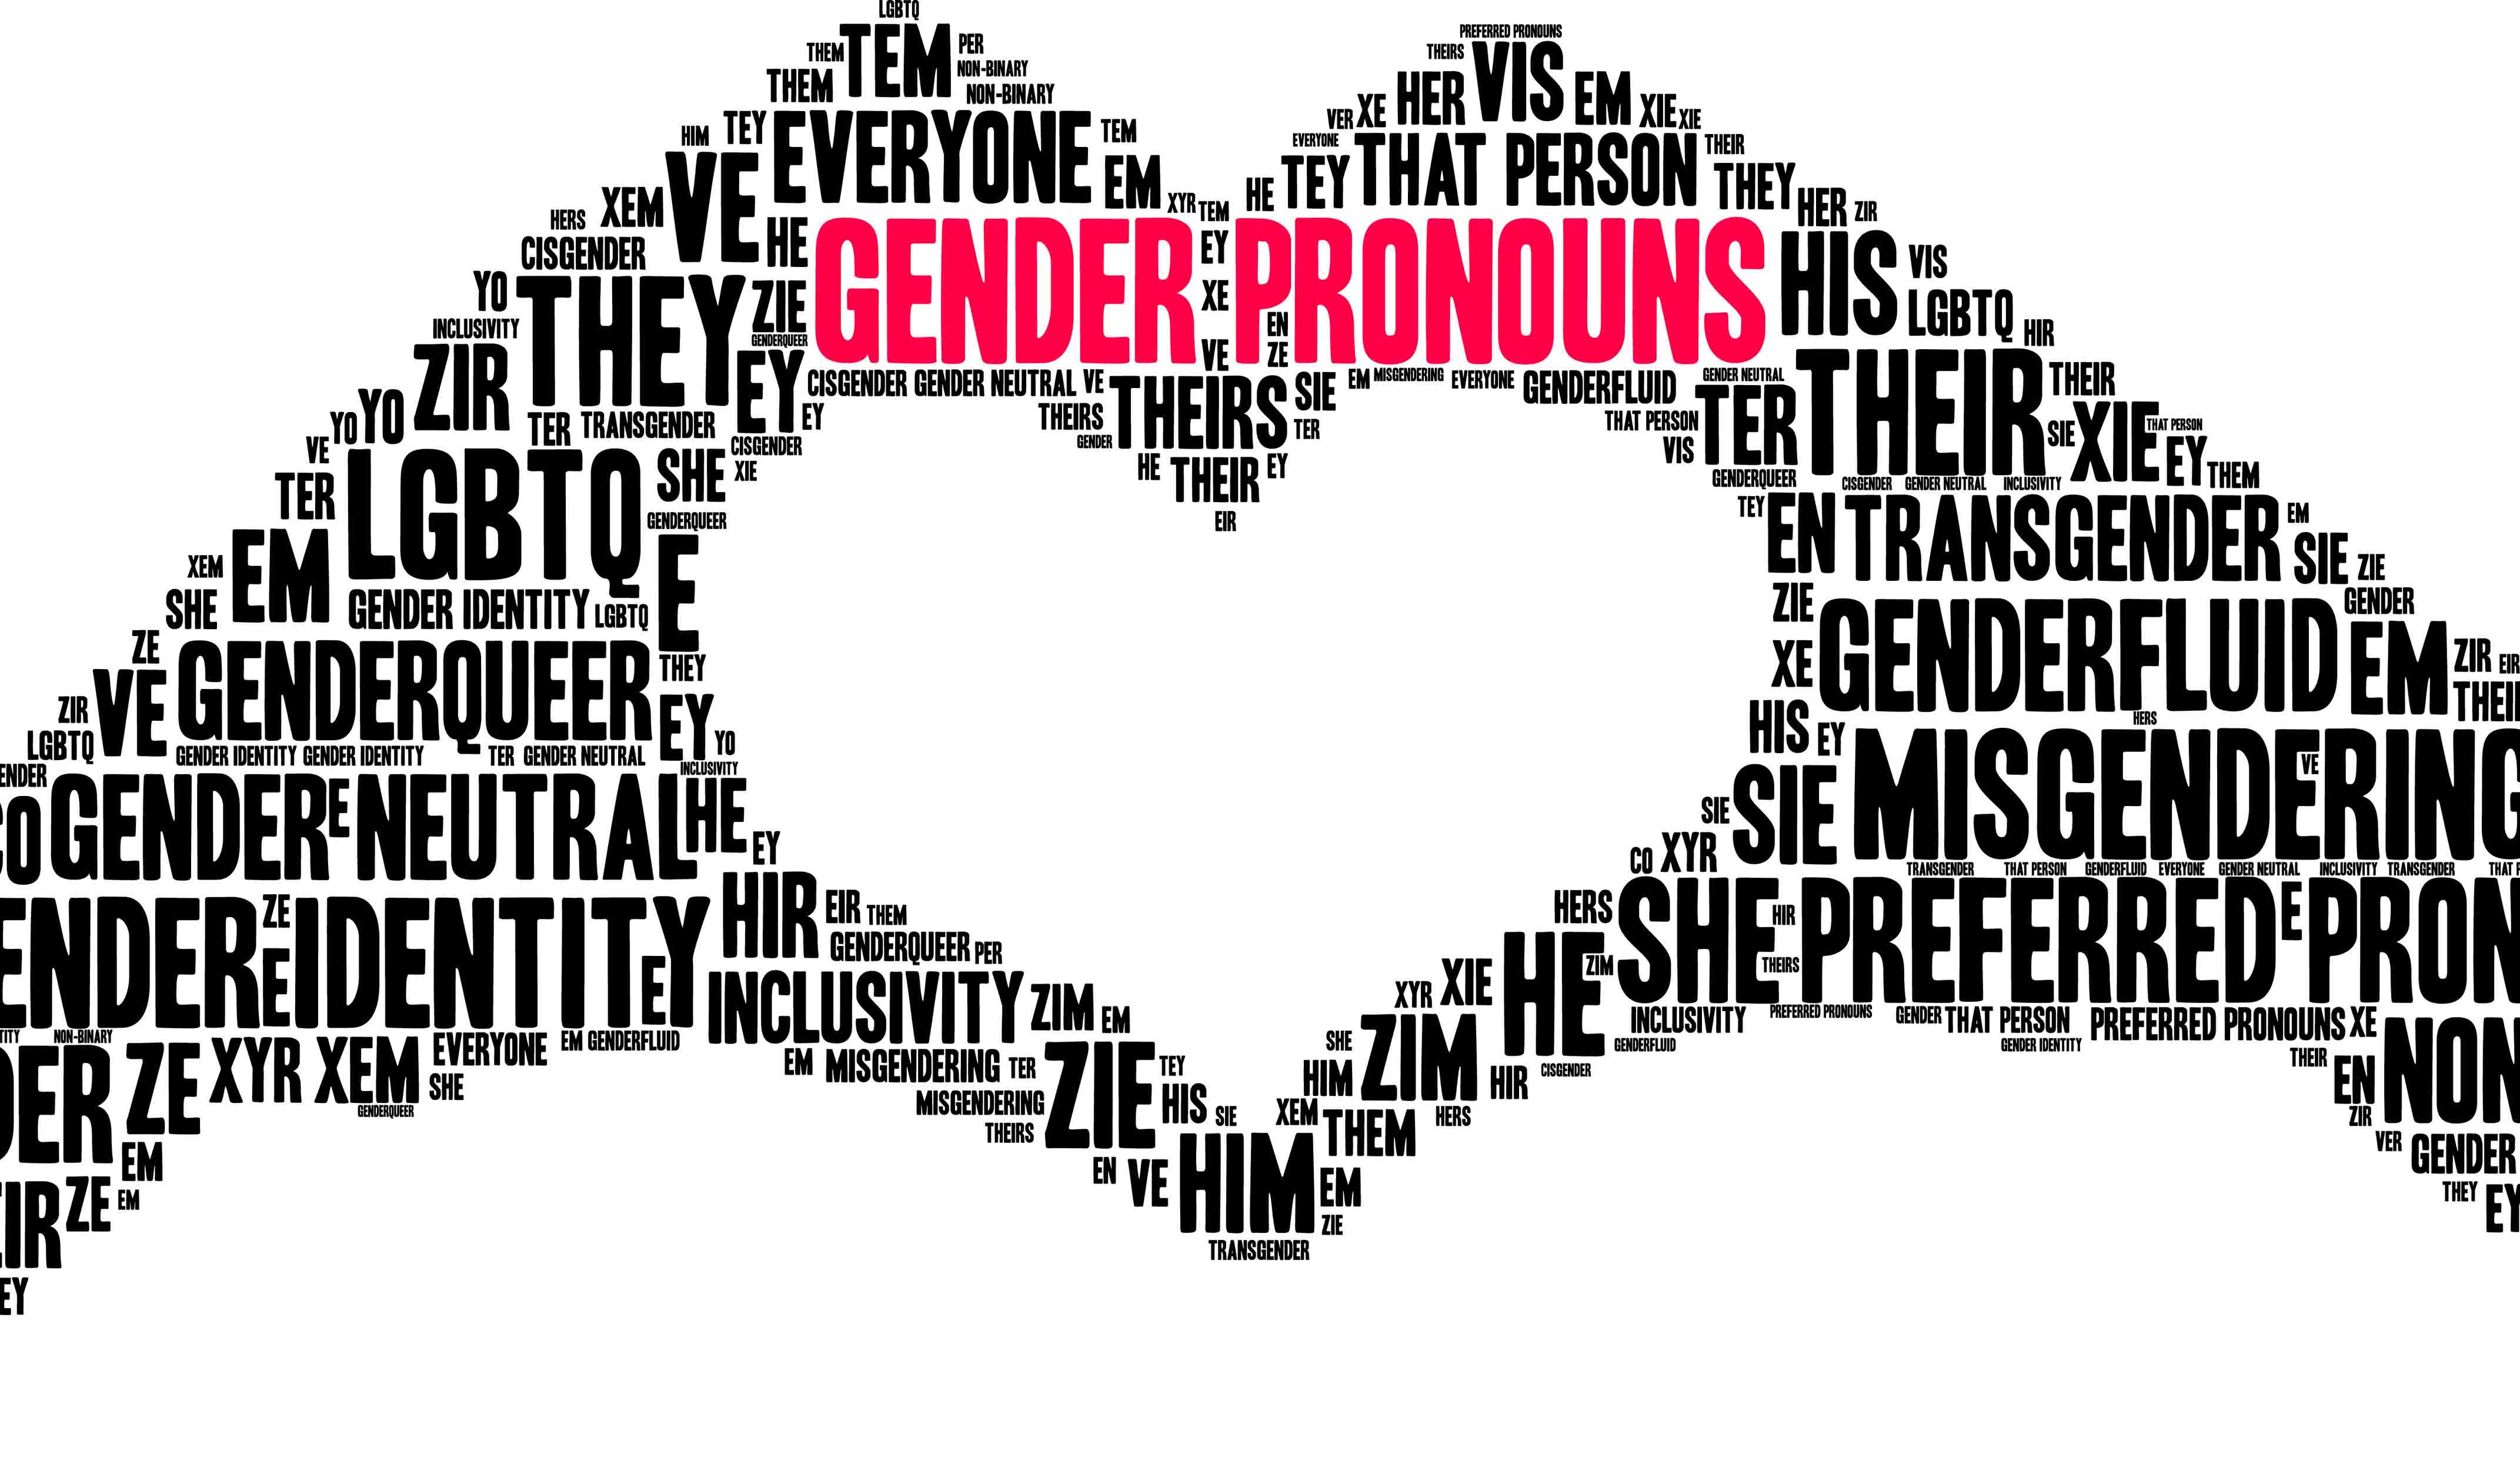 Pronouns in LGBTQ healthcare